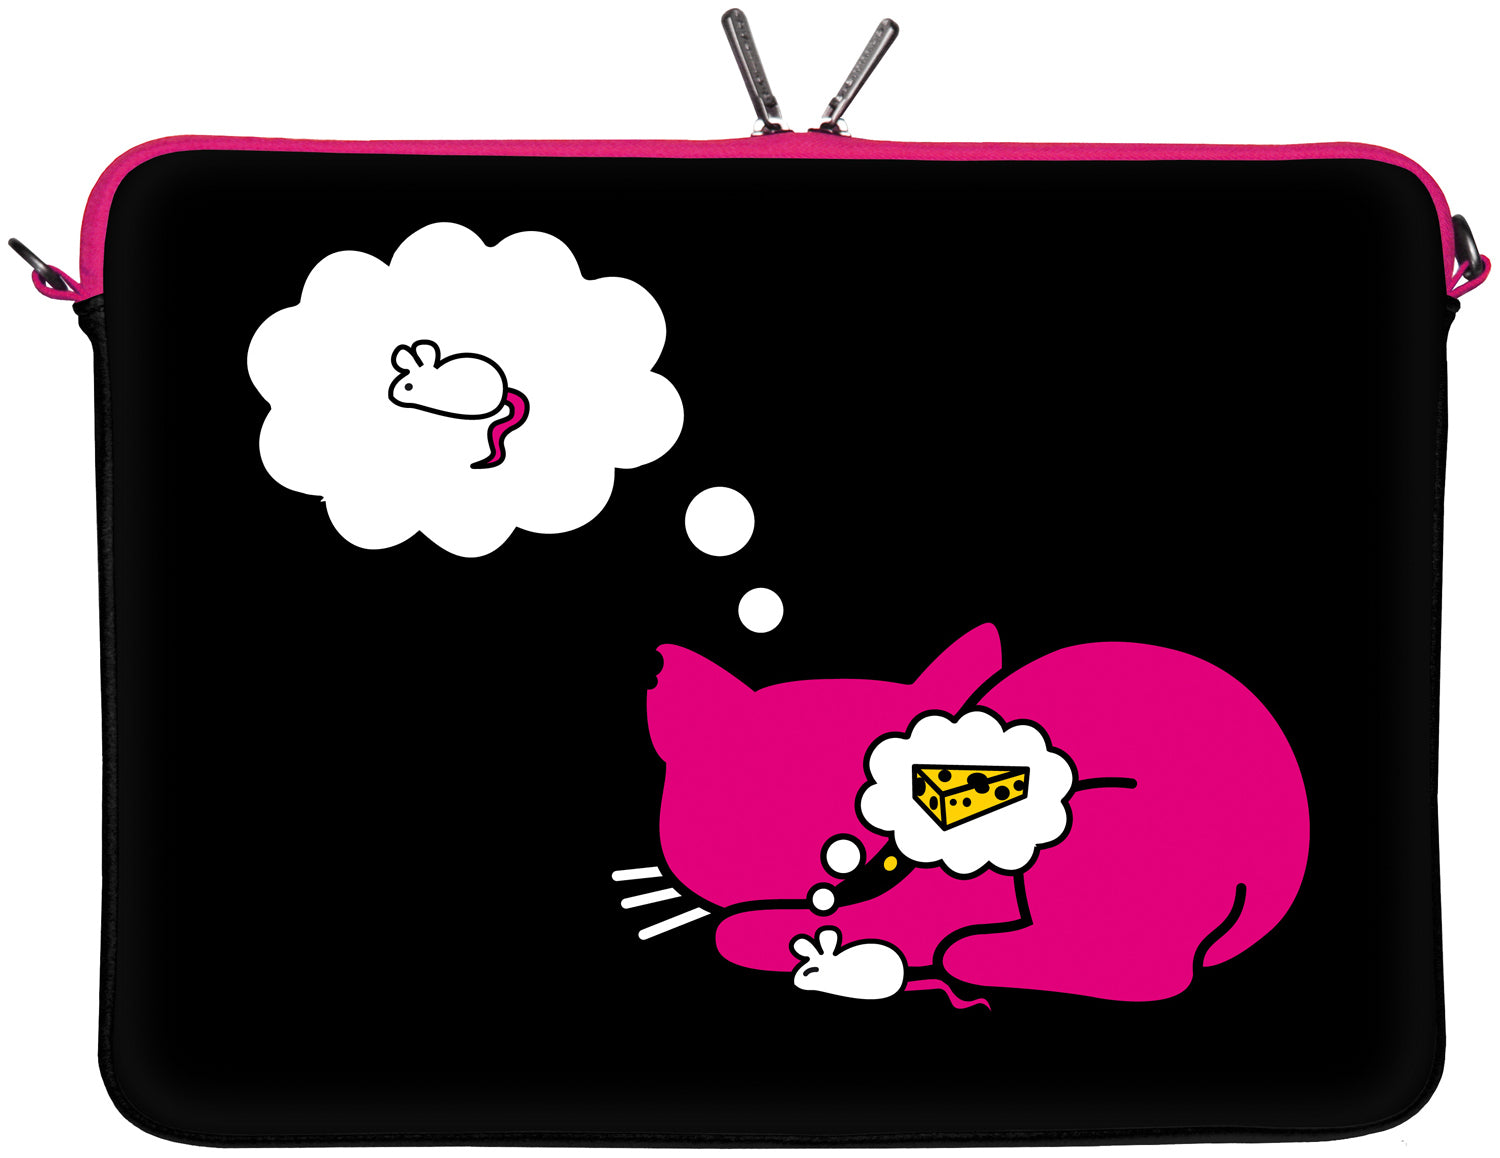 Rückseite der LS143 Kitty to Go Designer Laptop Tasche in schwarz-pink mit Anti Shock-System